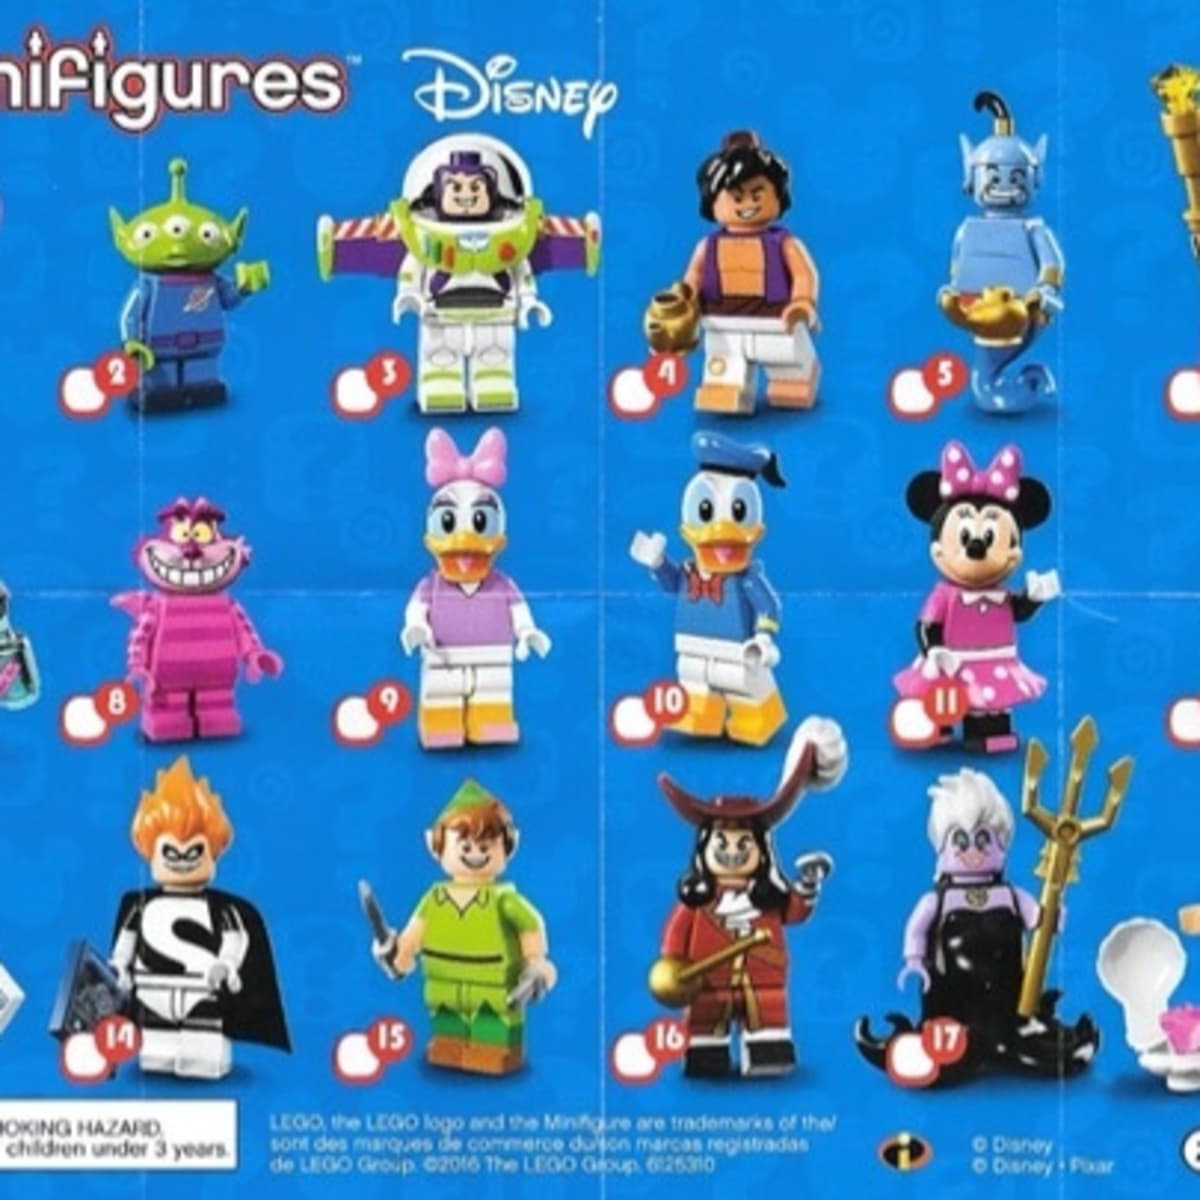 LEGO Disney Minifigure Series 1 Review - HobbyLark